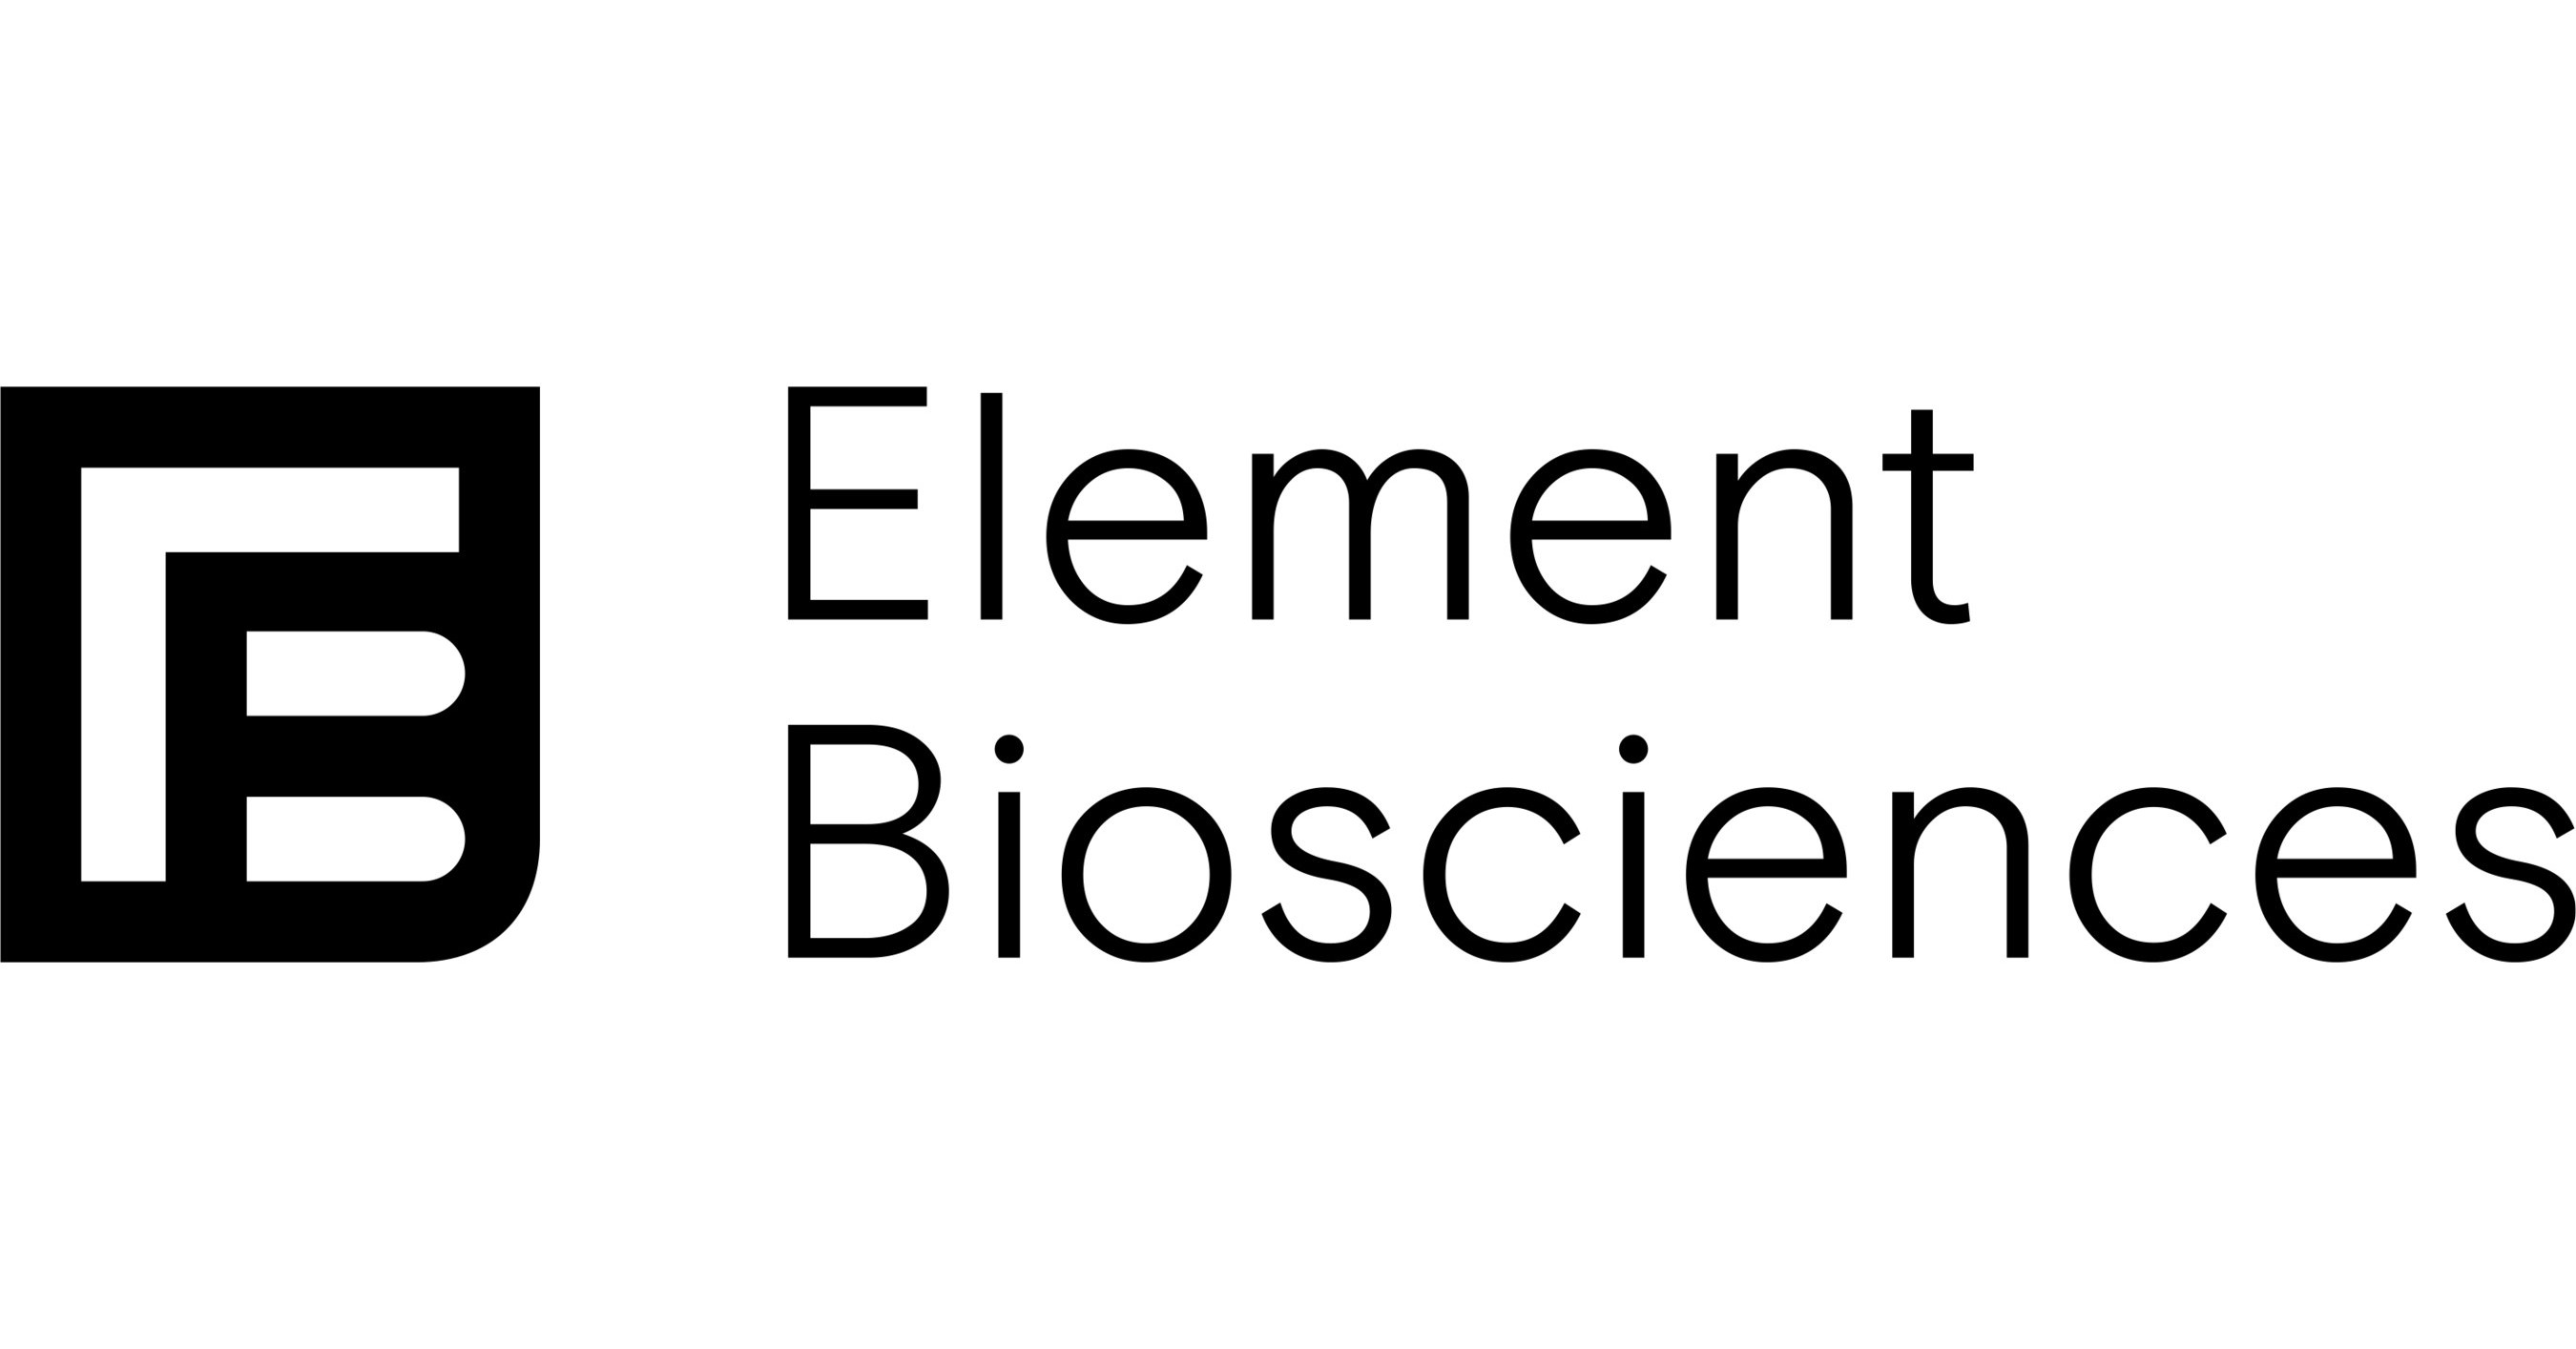 Element Biosciences在参加投资者会议之前宣布测序仪安装量增长创纪录